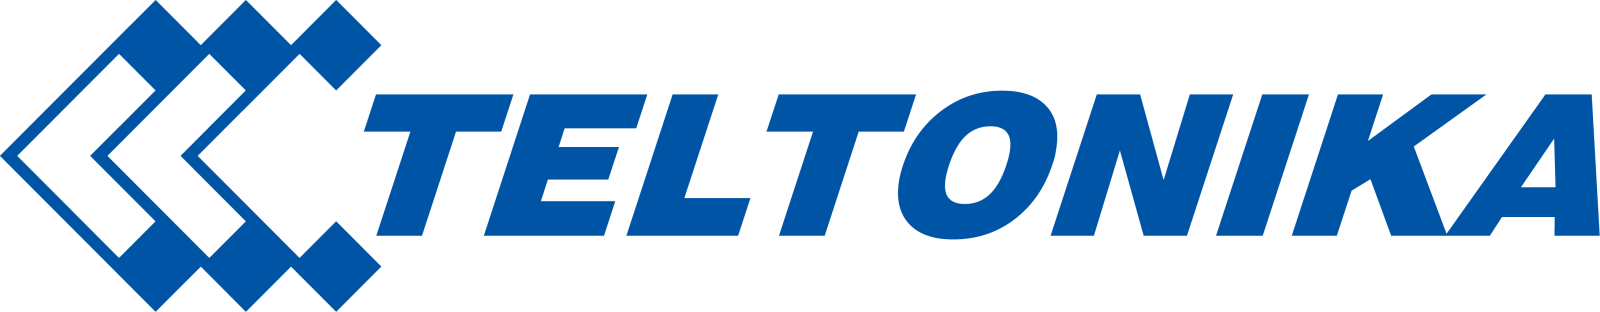 Teltonika-logo.png (2954×580)